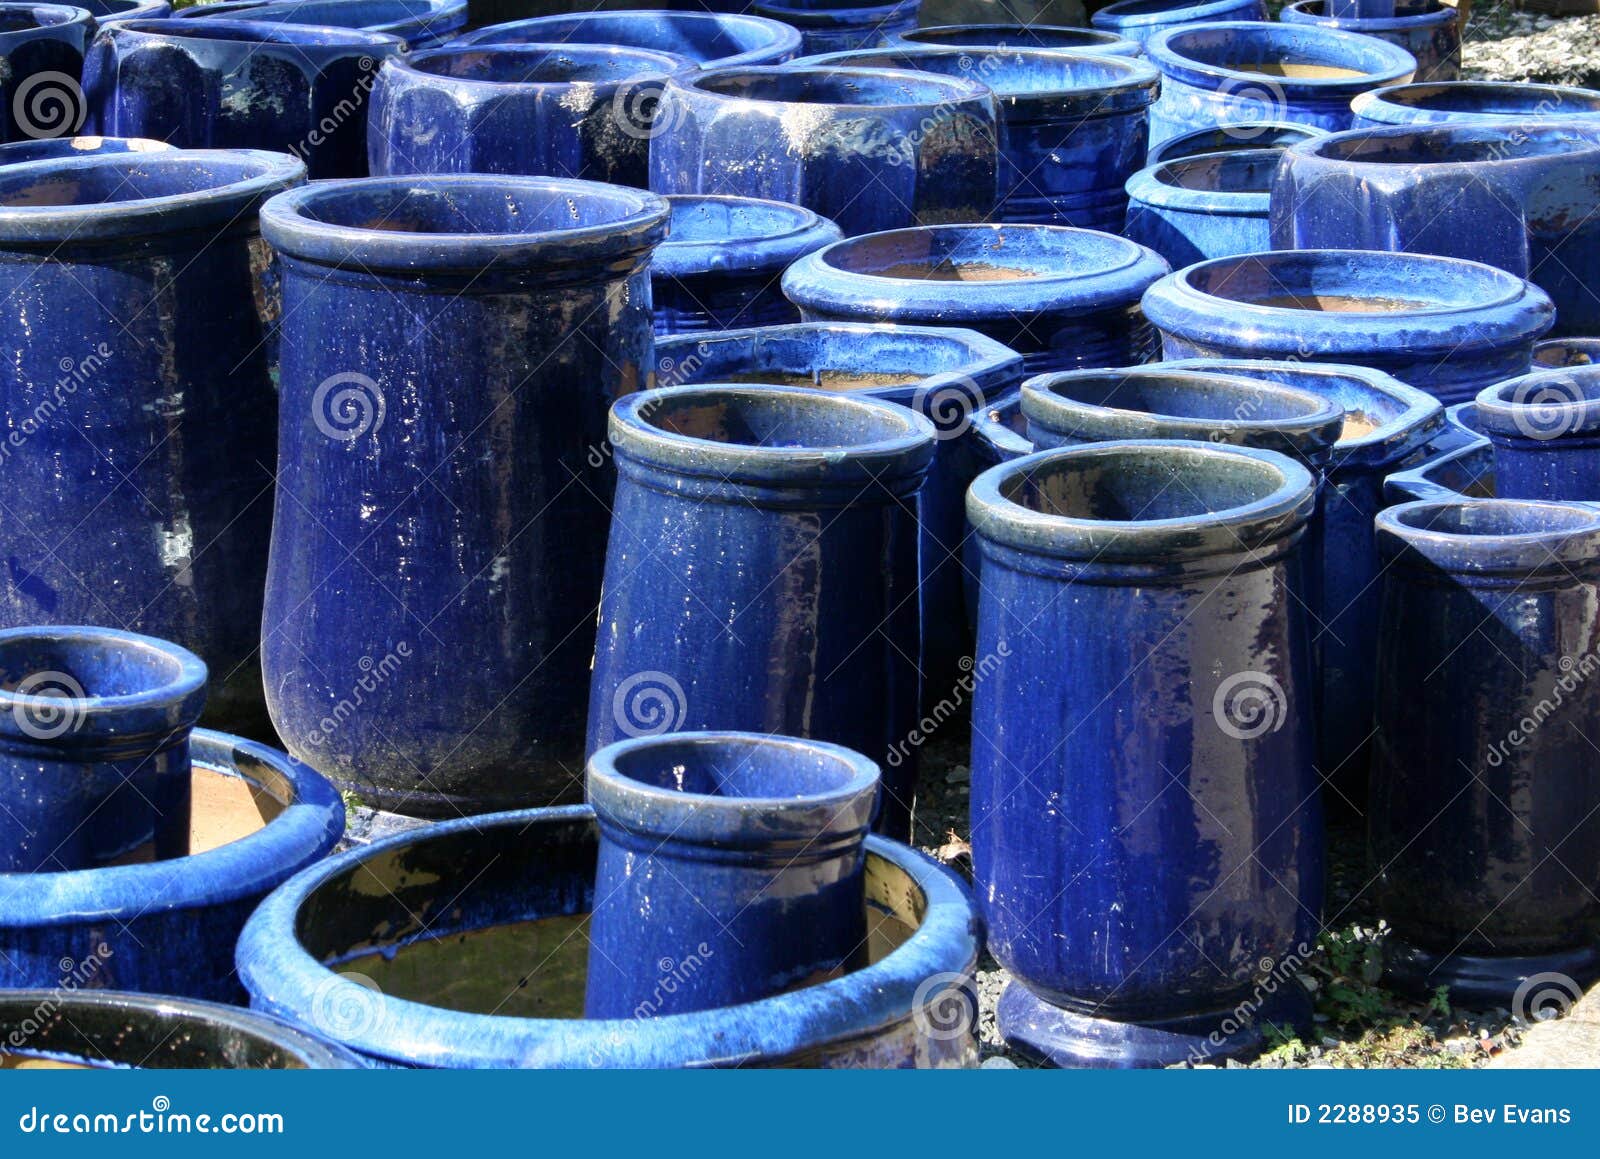 leerboek Explosieven Verkeerd Blauwe tuinpotten stock afbeelding. Image of potten, containers - 2288935